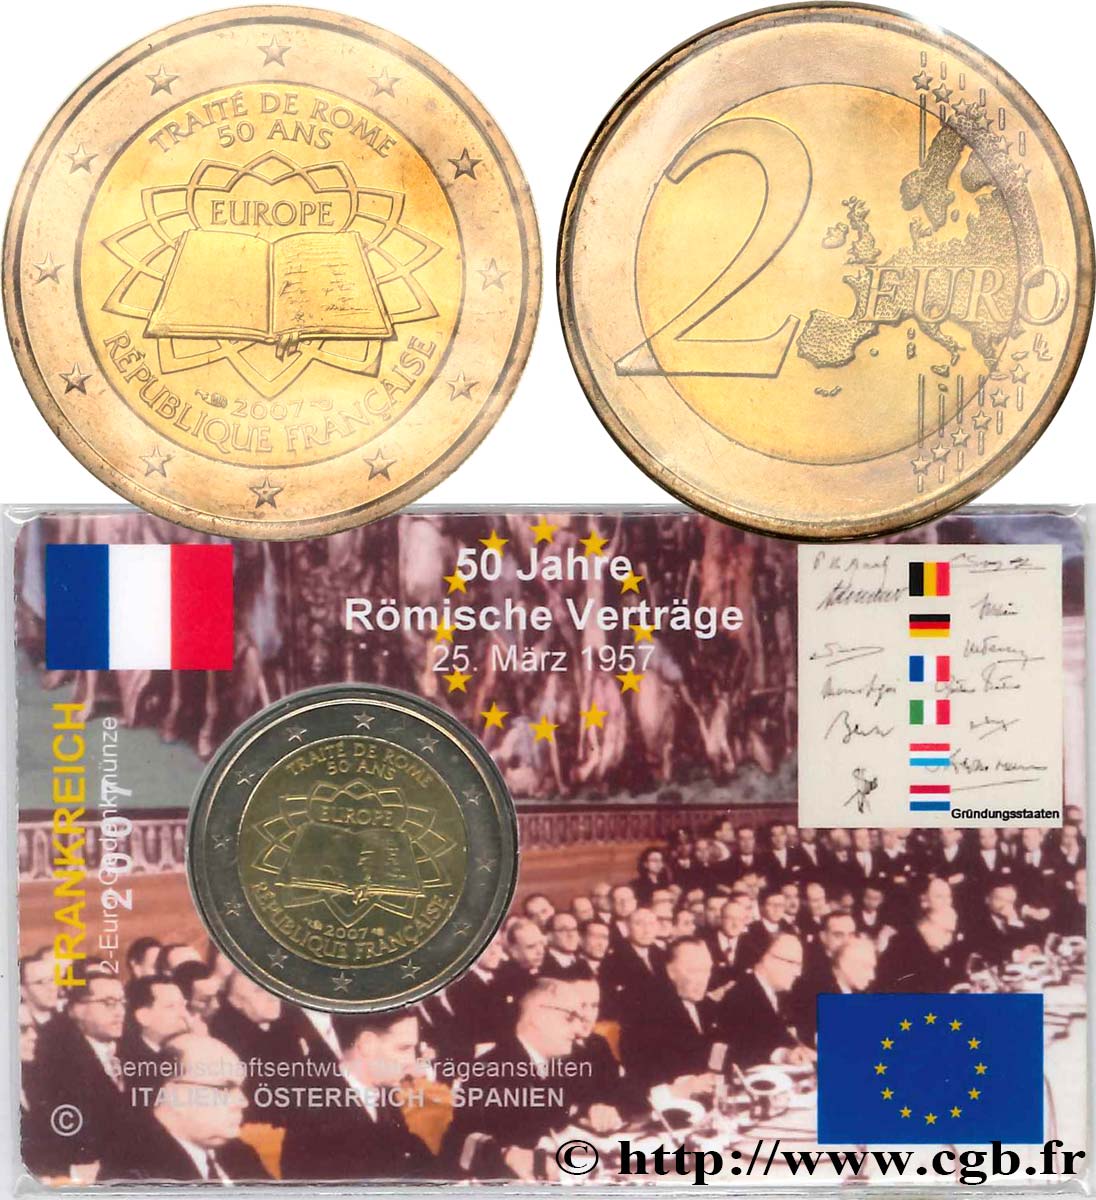 FRANCE Coin-Card 2 Euro CINQUANTENAIRE DU TRAITÉ DE ROME 2007 BU